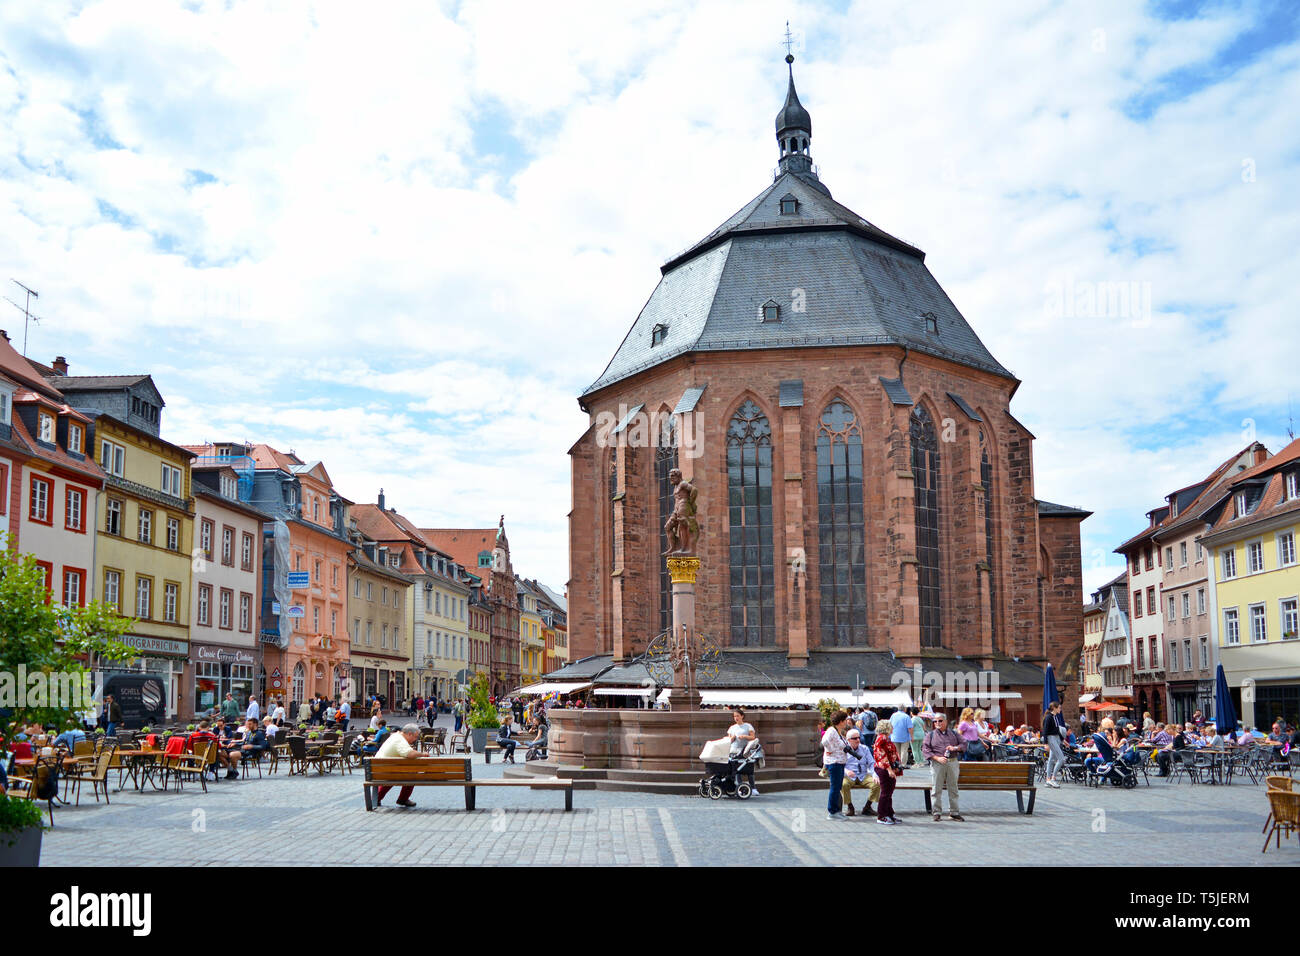 Kirche des Heiligen Geistes genannt "Heiliggeistkirche" in Deutsch am Marktplatz im historischen Stadtzentrum an einem sonnigen Tag Stockfoto